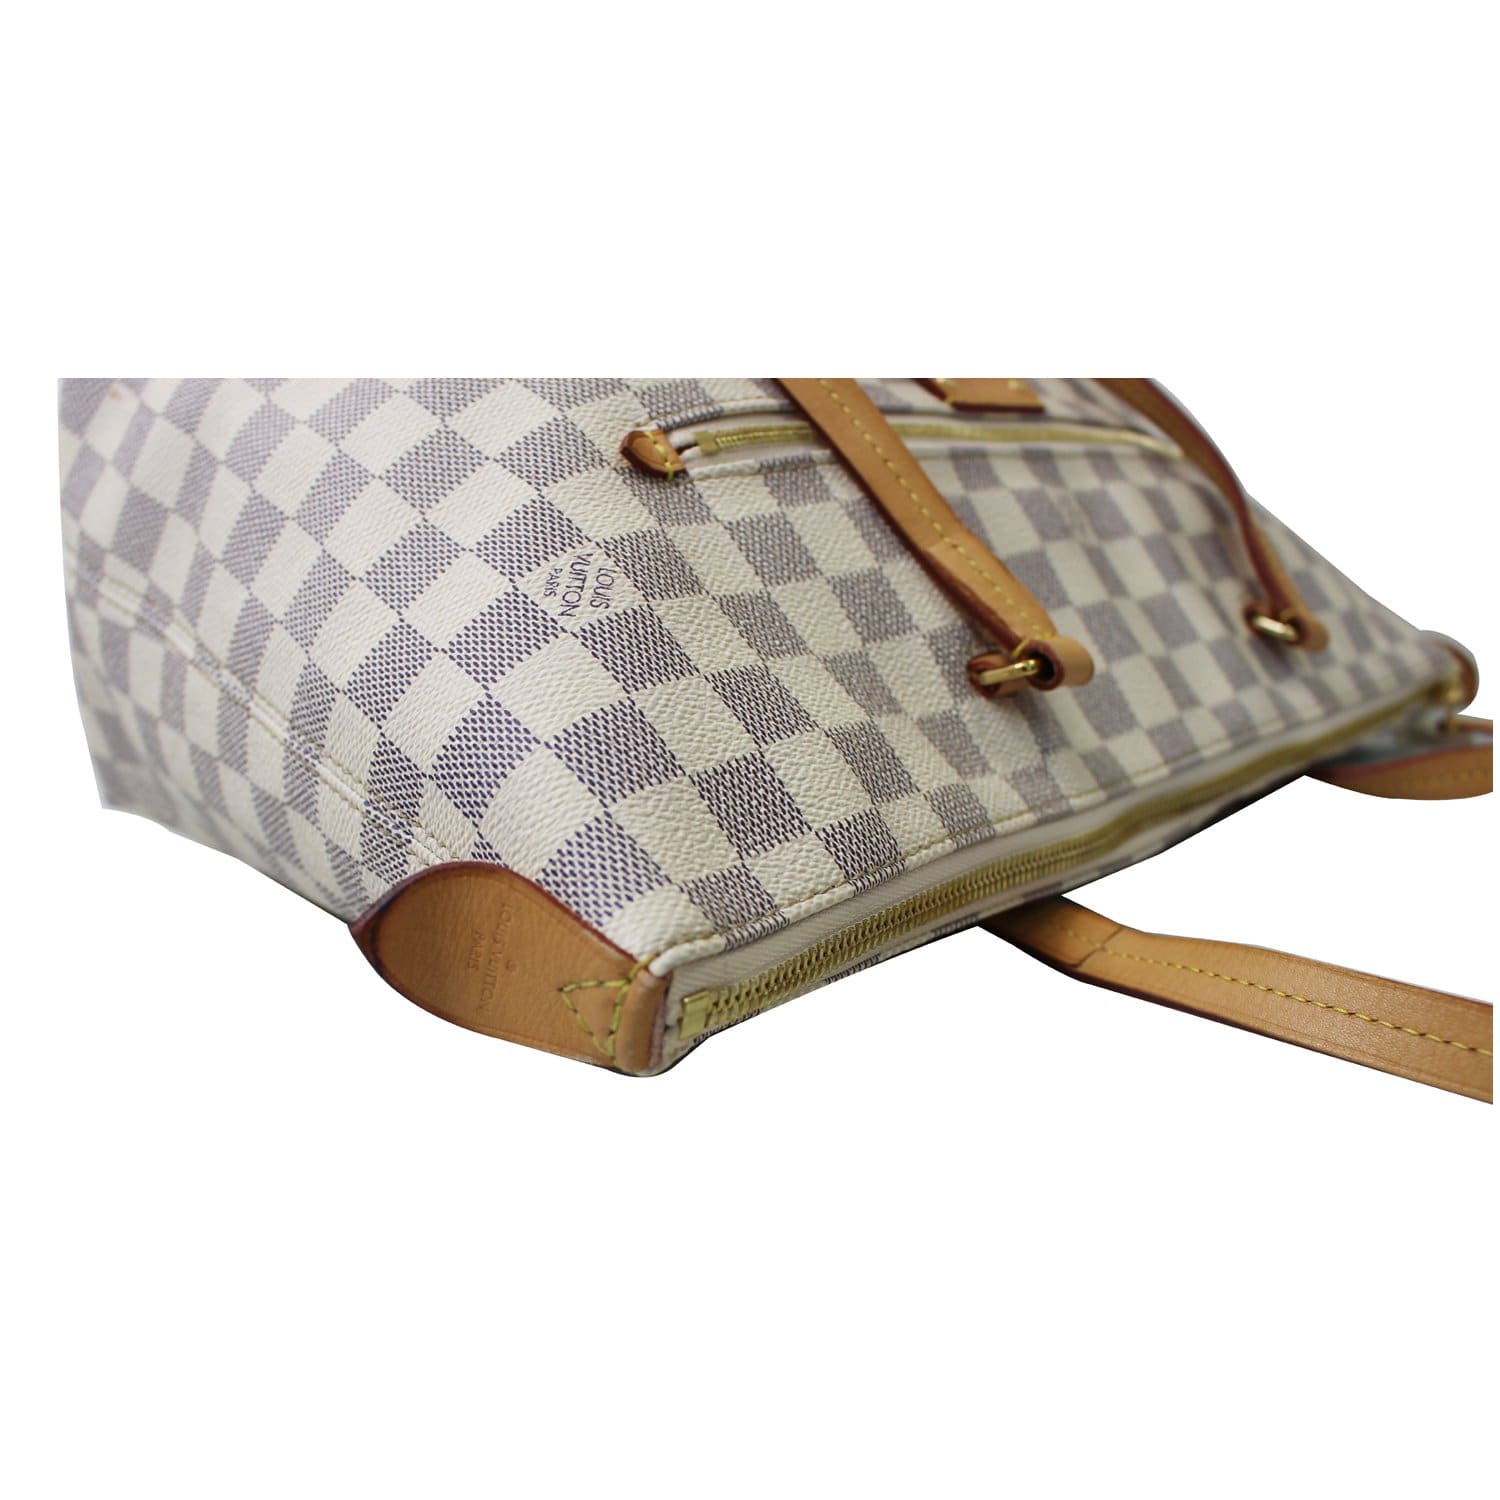 Louis Vuitton Damier Azur Iena MM - Neutrals Totes, Handbags - LOU795914